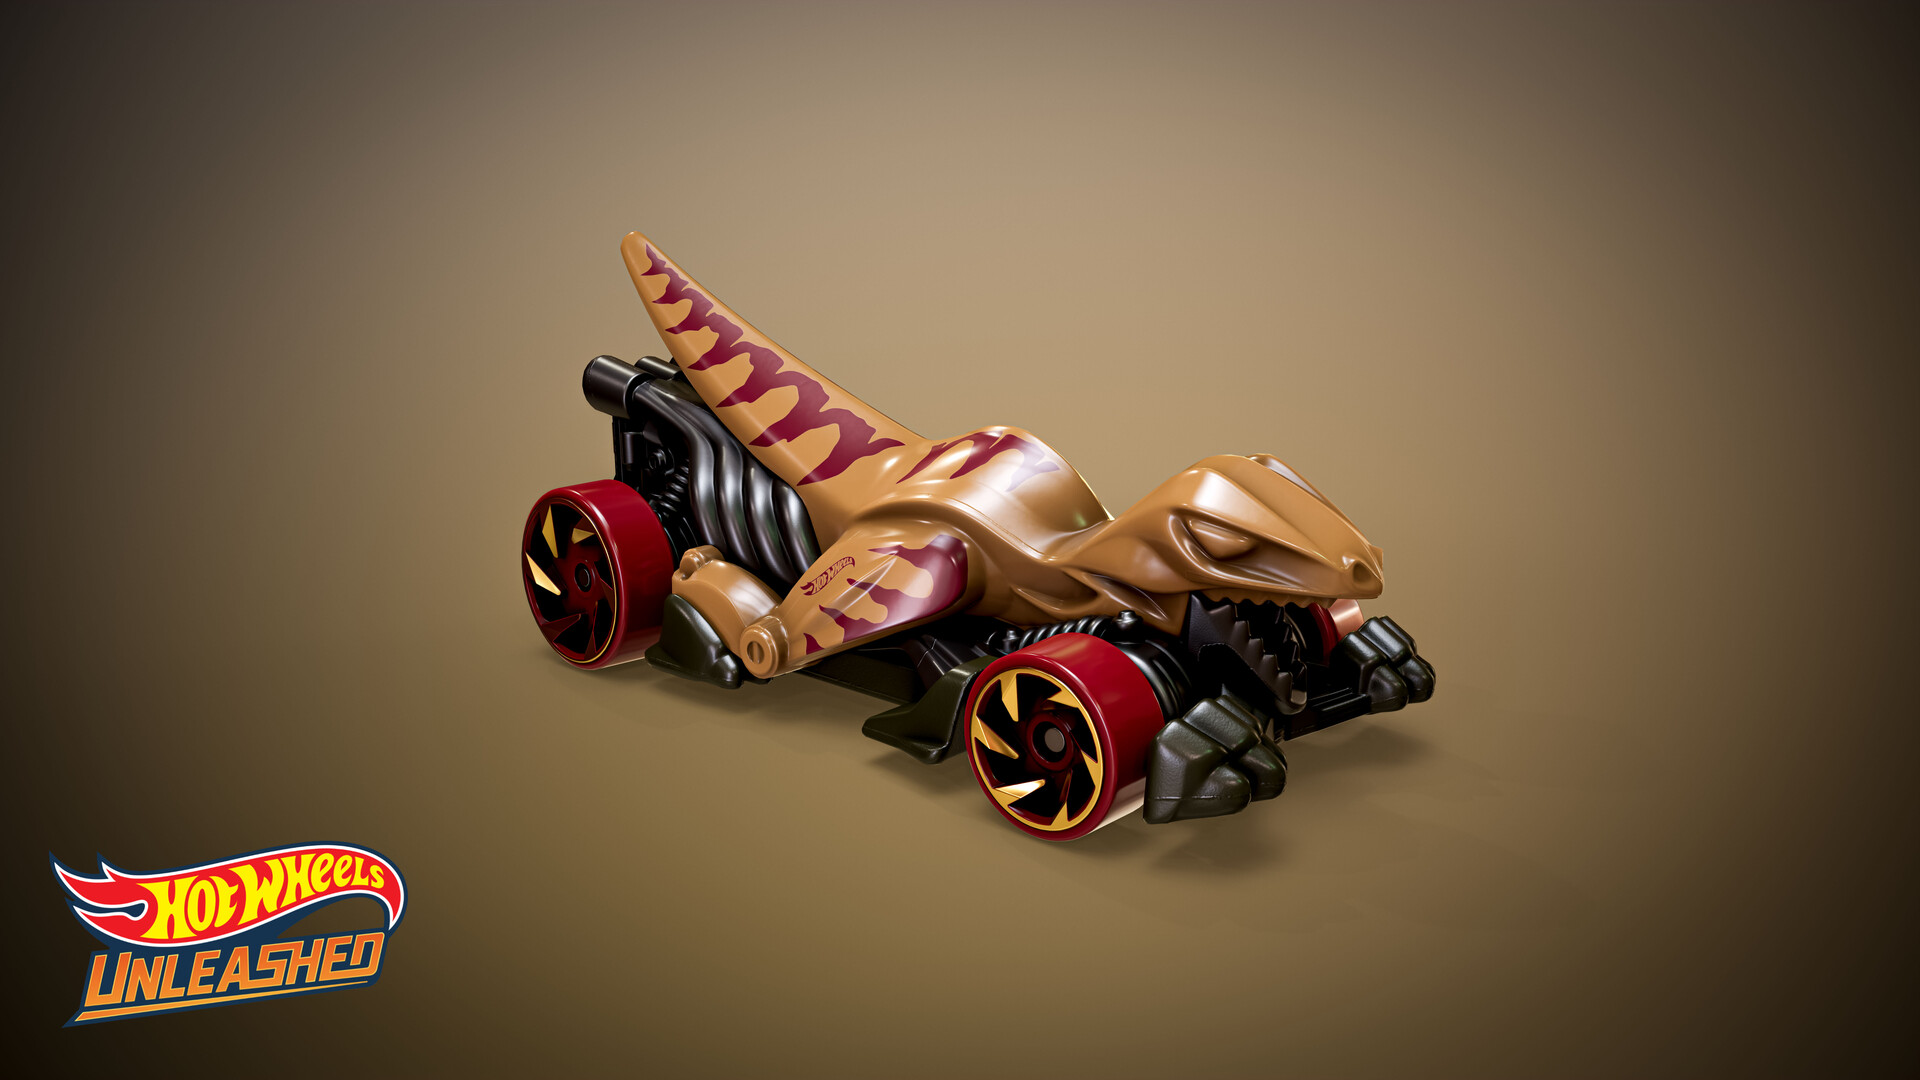 Carrinho Hot Wheels Veloci-Racer - Mattel